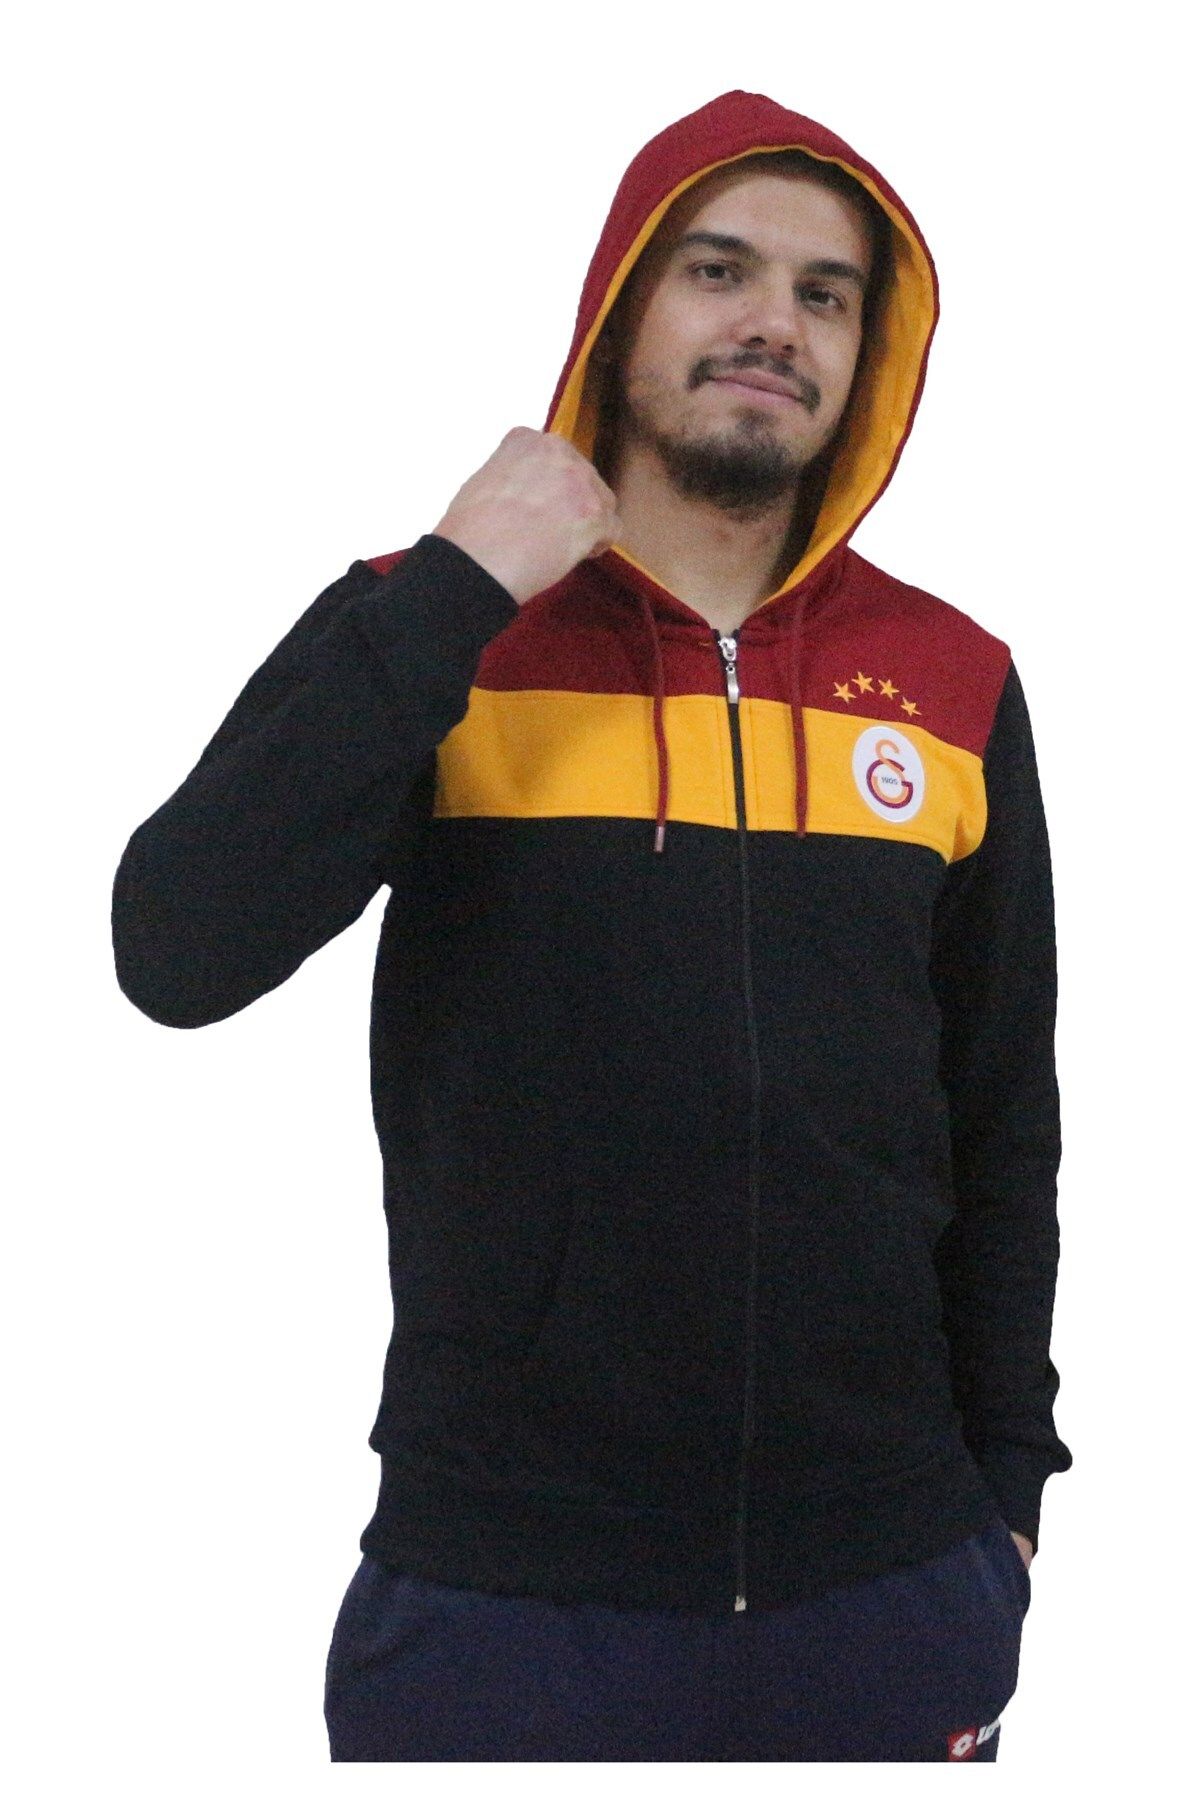 Galatasaray Sweatshirt Ceket Siyah